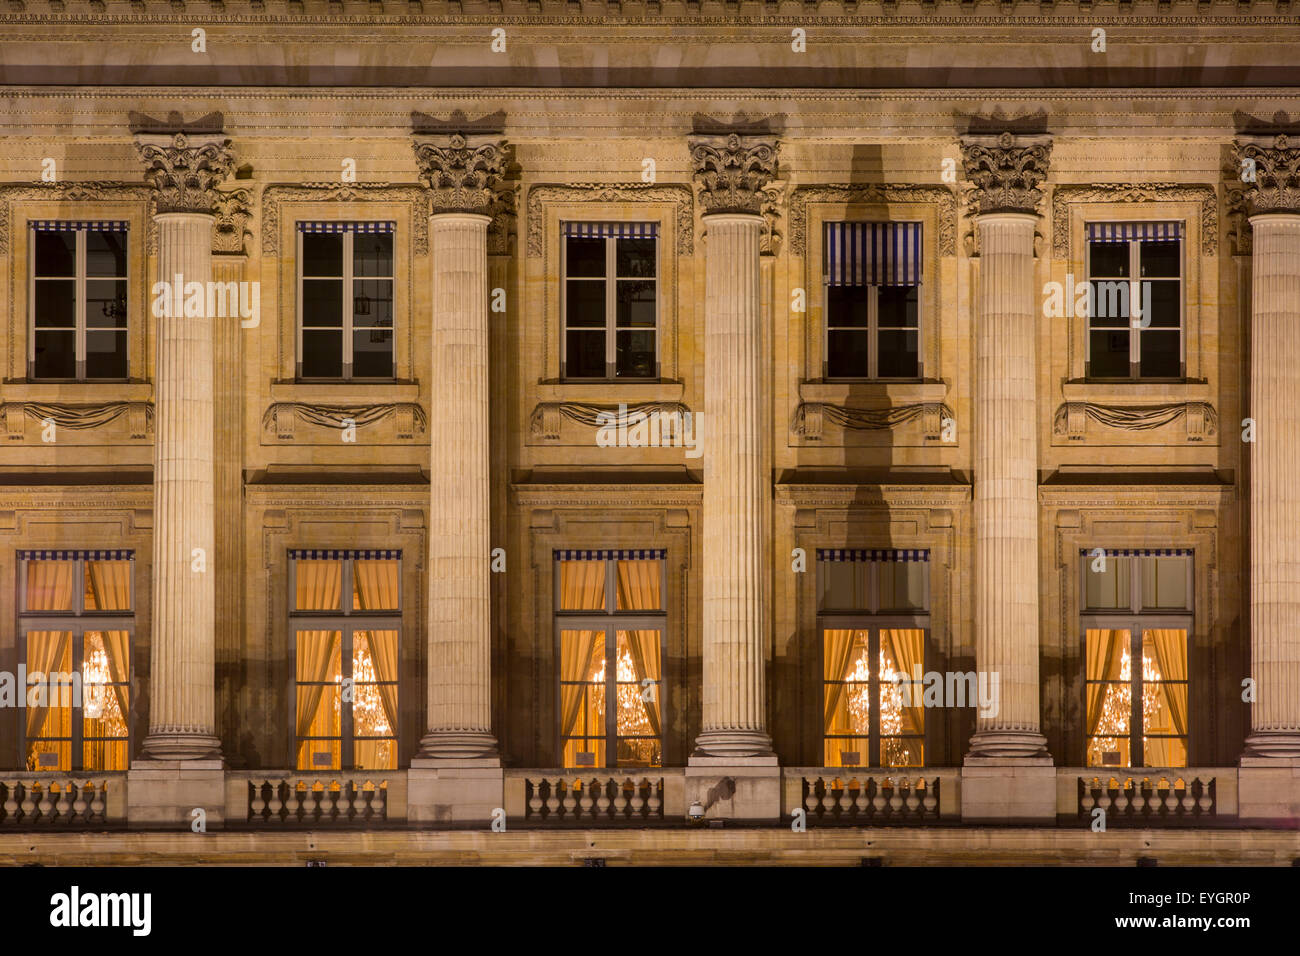 Rangée de colonnes et de fenêtres dans le bâtiment à la place de la Concorde, Paris, France Banque D'Images